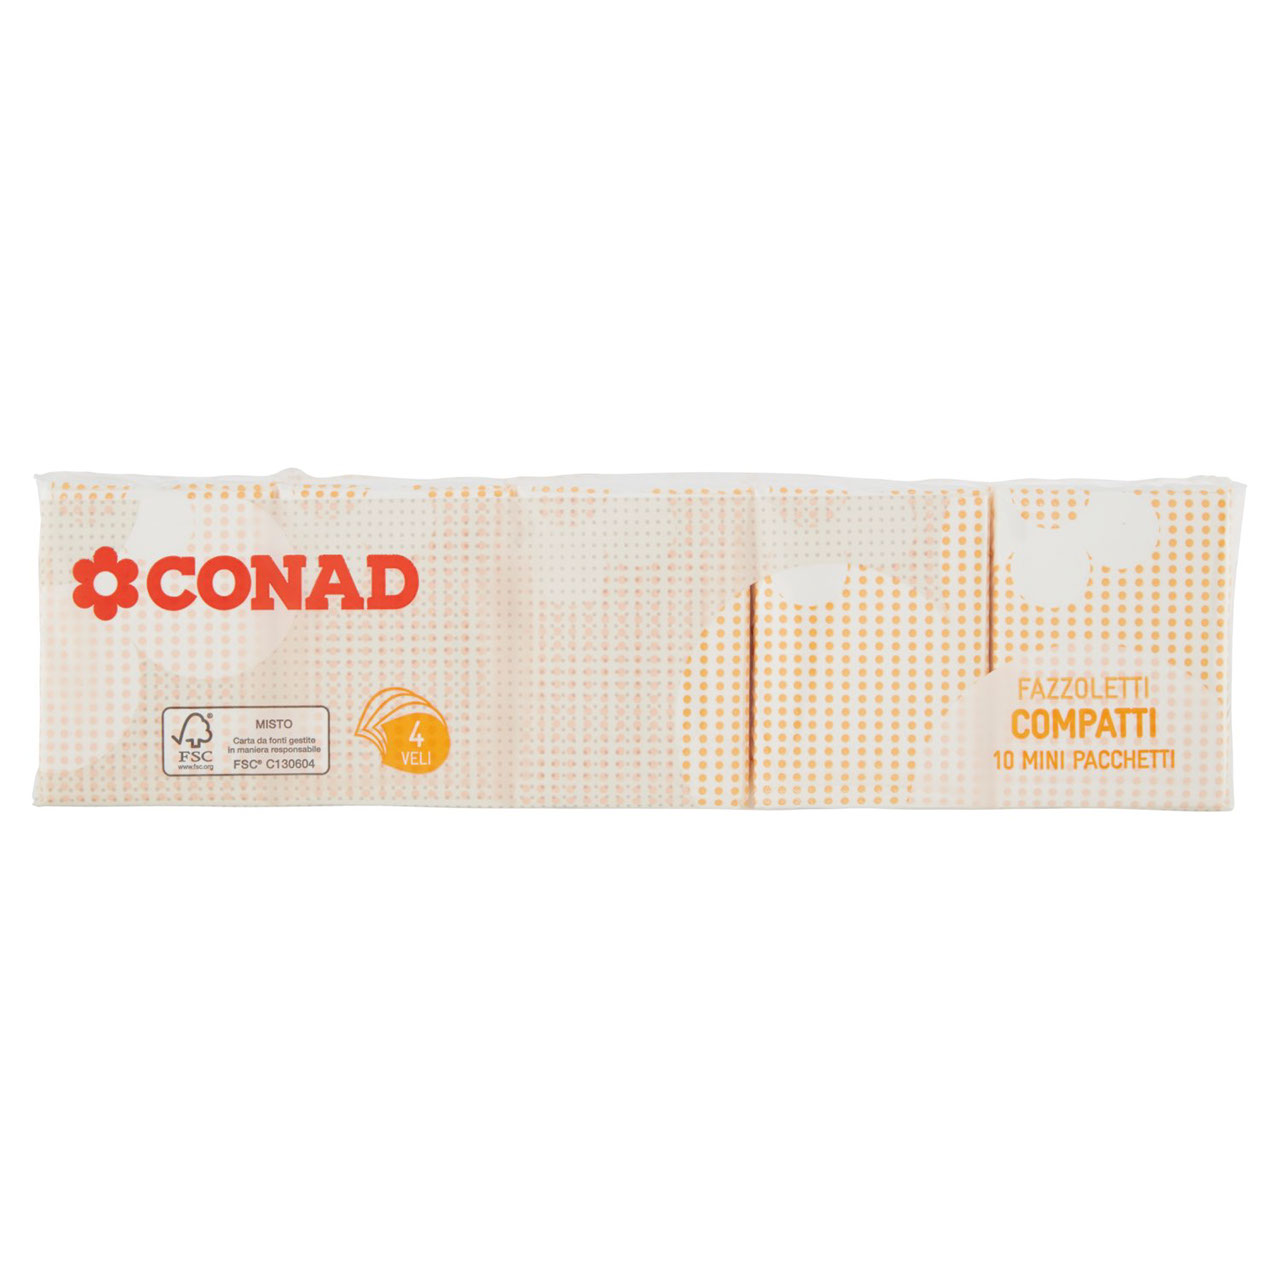 Fazzoletti Mini 4 Veli 10 pz Conad vendita online | Conad